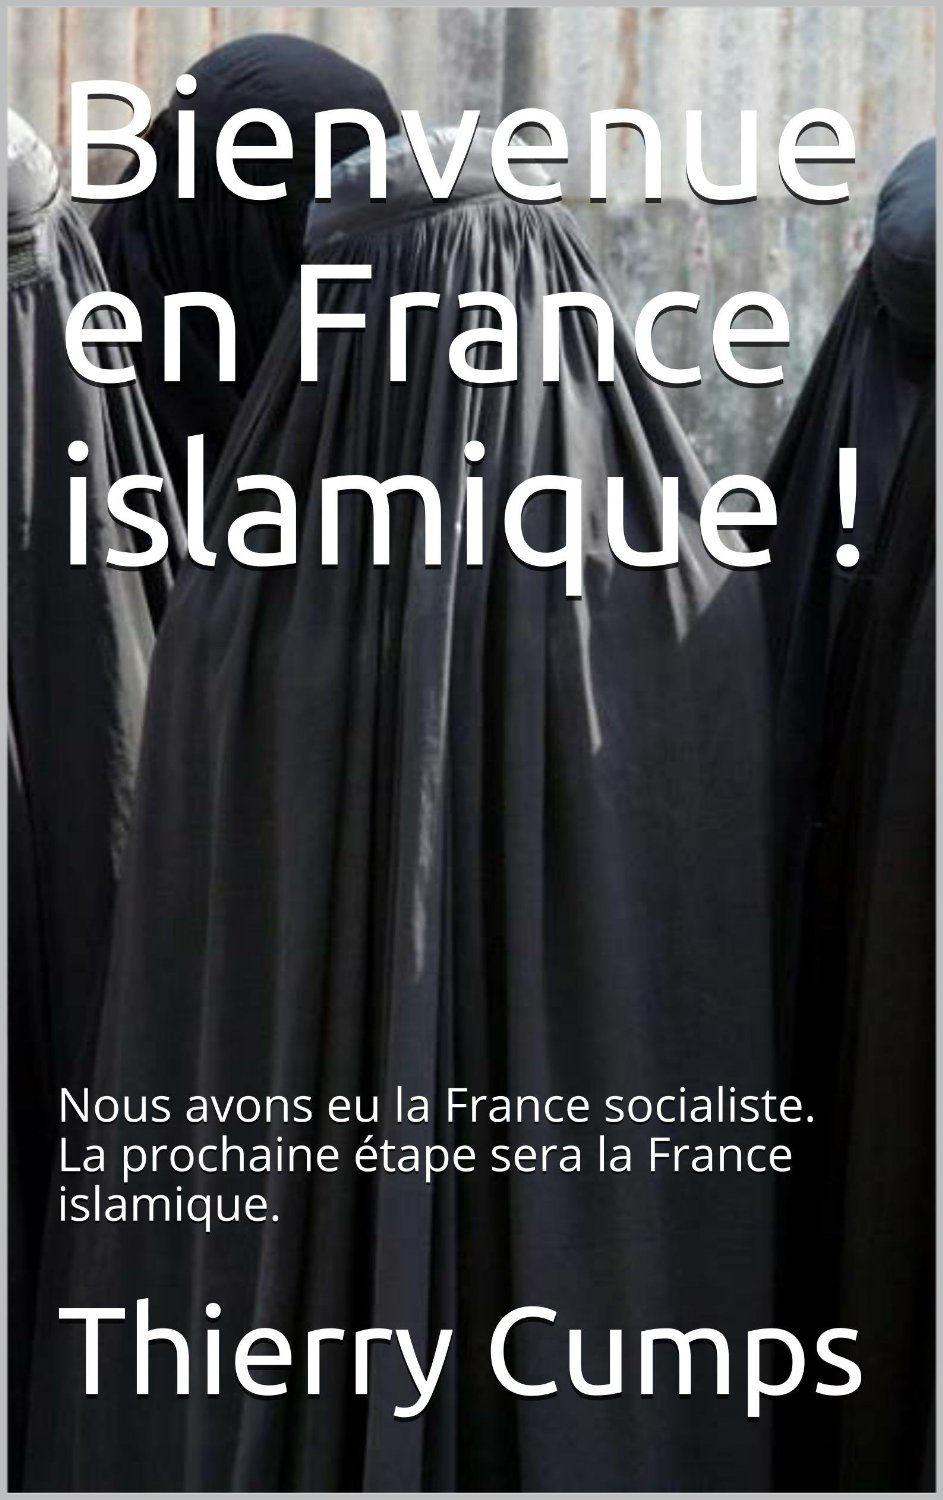 مرحبا بكم في فرنسا الا سلامية: كان لدينا فرنسا الا شتراكية الخطوة التالية هي فرنسا الا